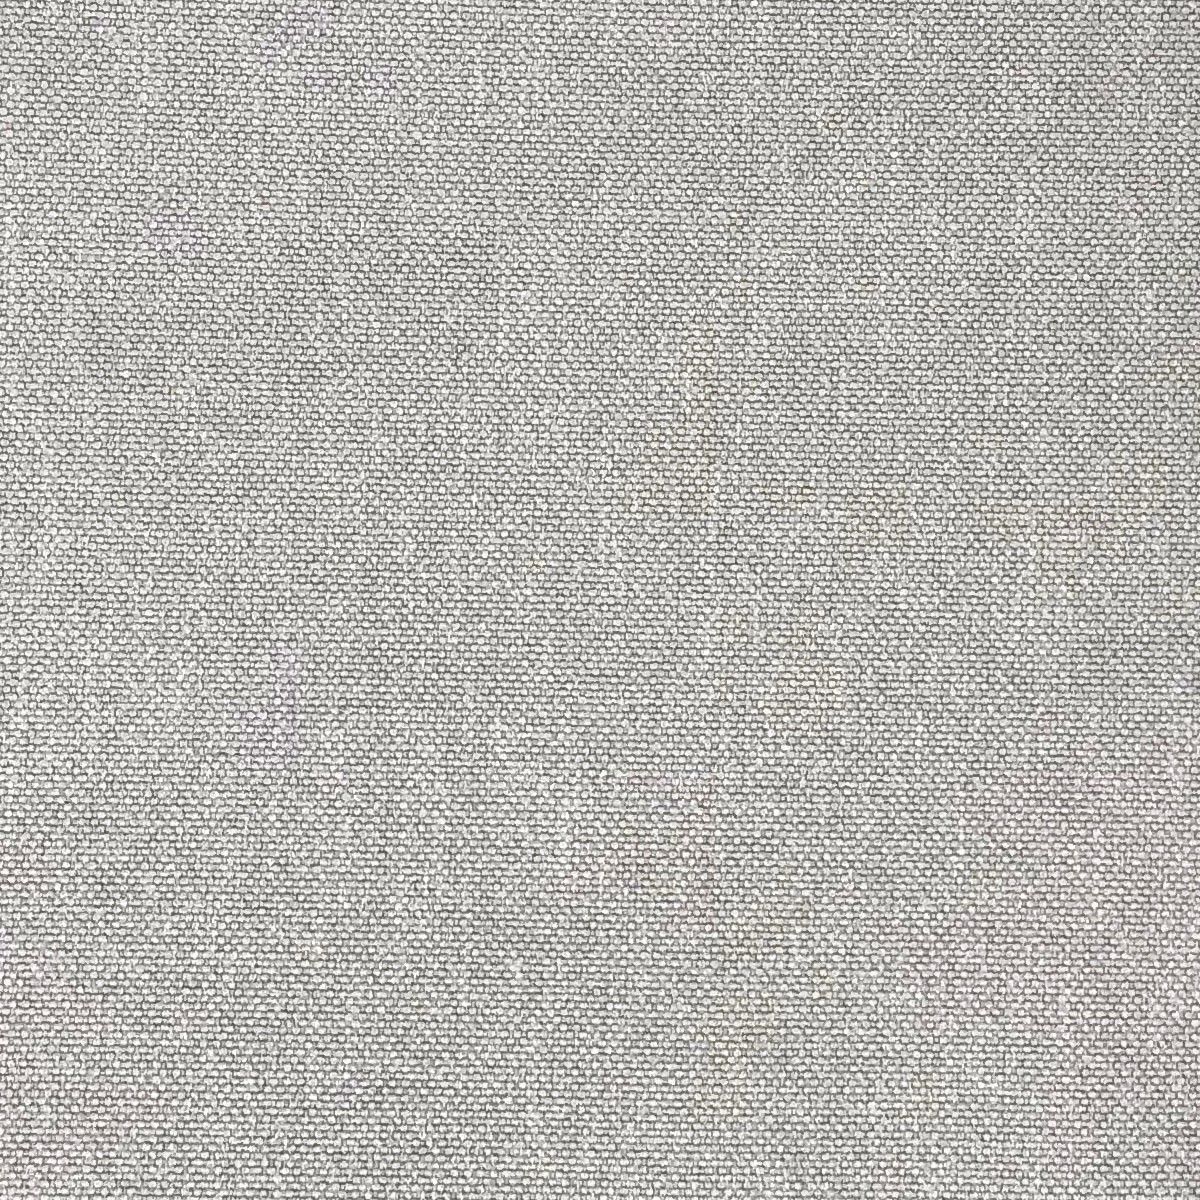 Glinara Slate Fabric by Chatham Glyn